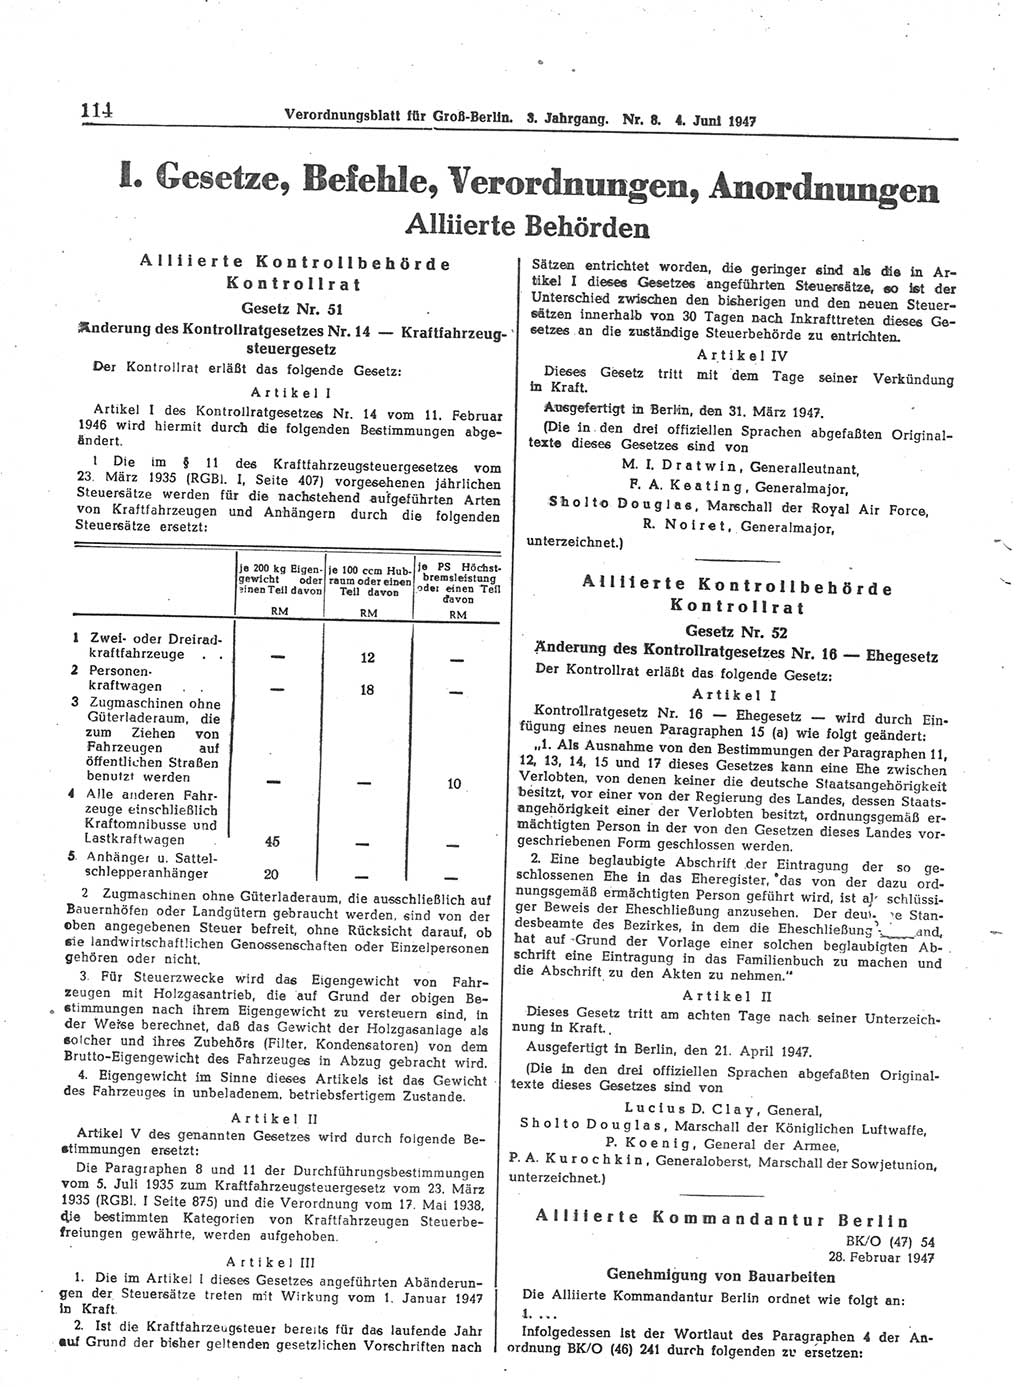 Verordnungsblatt (VOBl.) für Groß-Berlin 1947, Seite 114 (VOBl. Bln. 1947, S. 114)